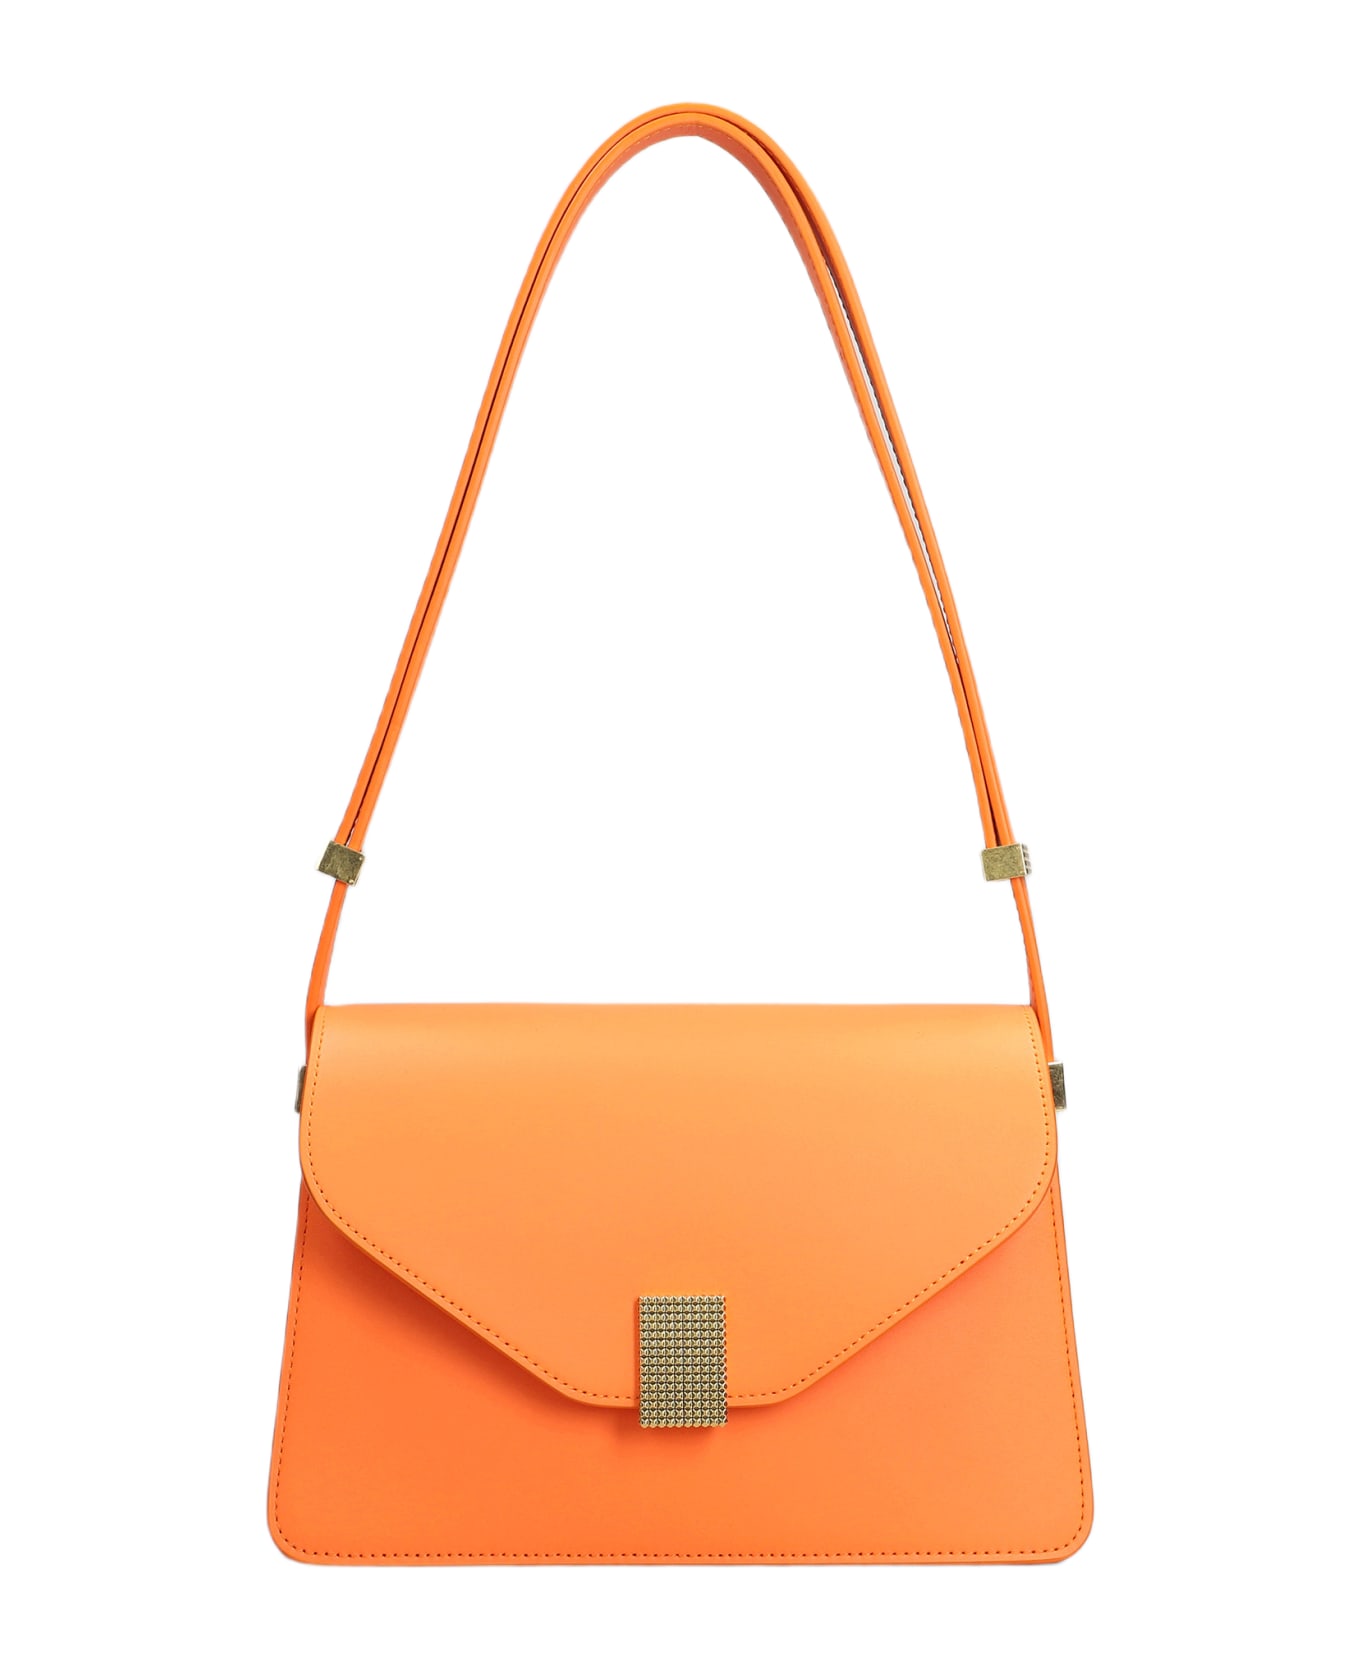 Lanvin Concerto Bag Shoulder Bag In Orange Leather - BRIGHT ORANGE